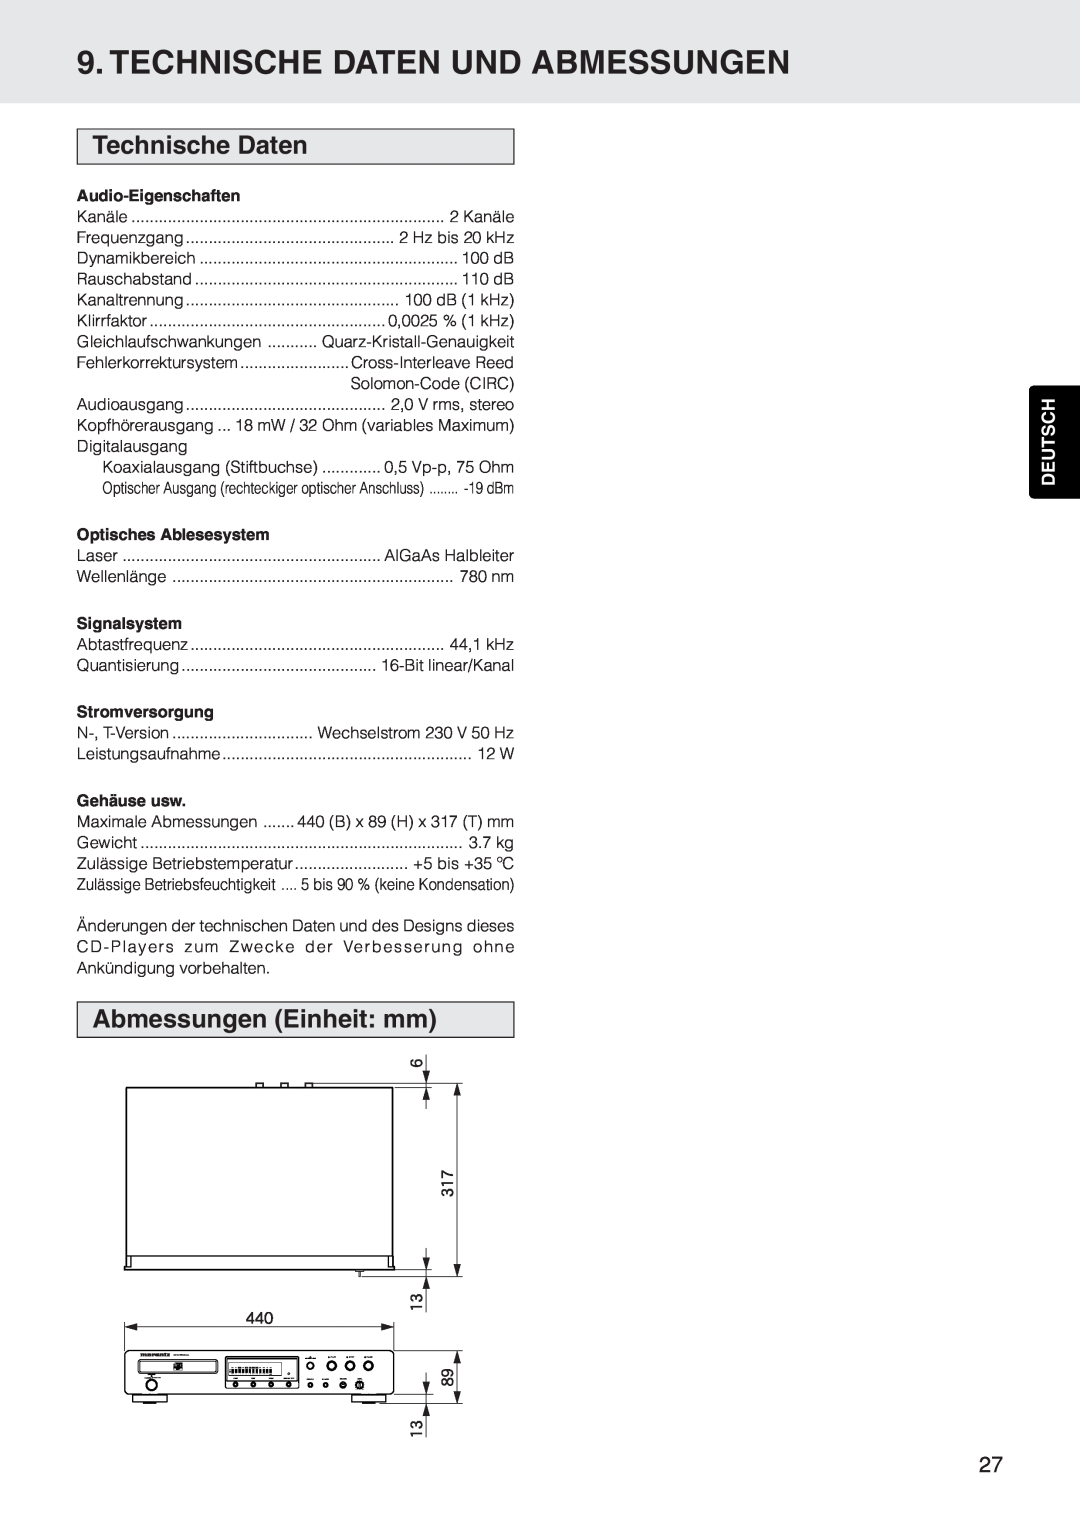 Marantz CD5400 manual Technische Daten Und Abmessungen, Abmessungen Einheit mm, Deutsch, Audio-Eigenschaften, Signalsystem 